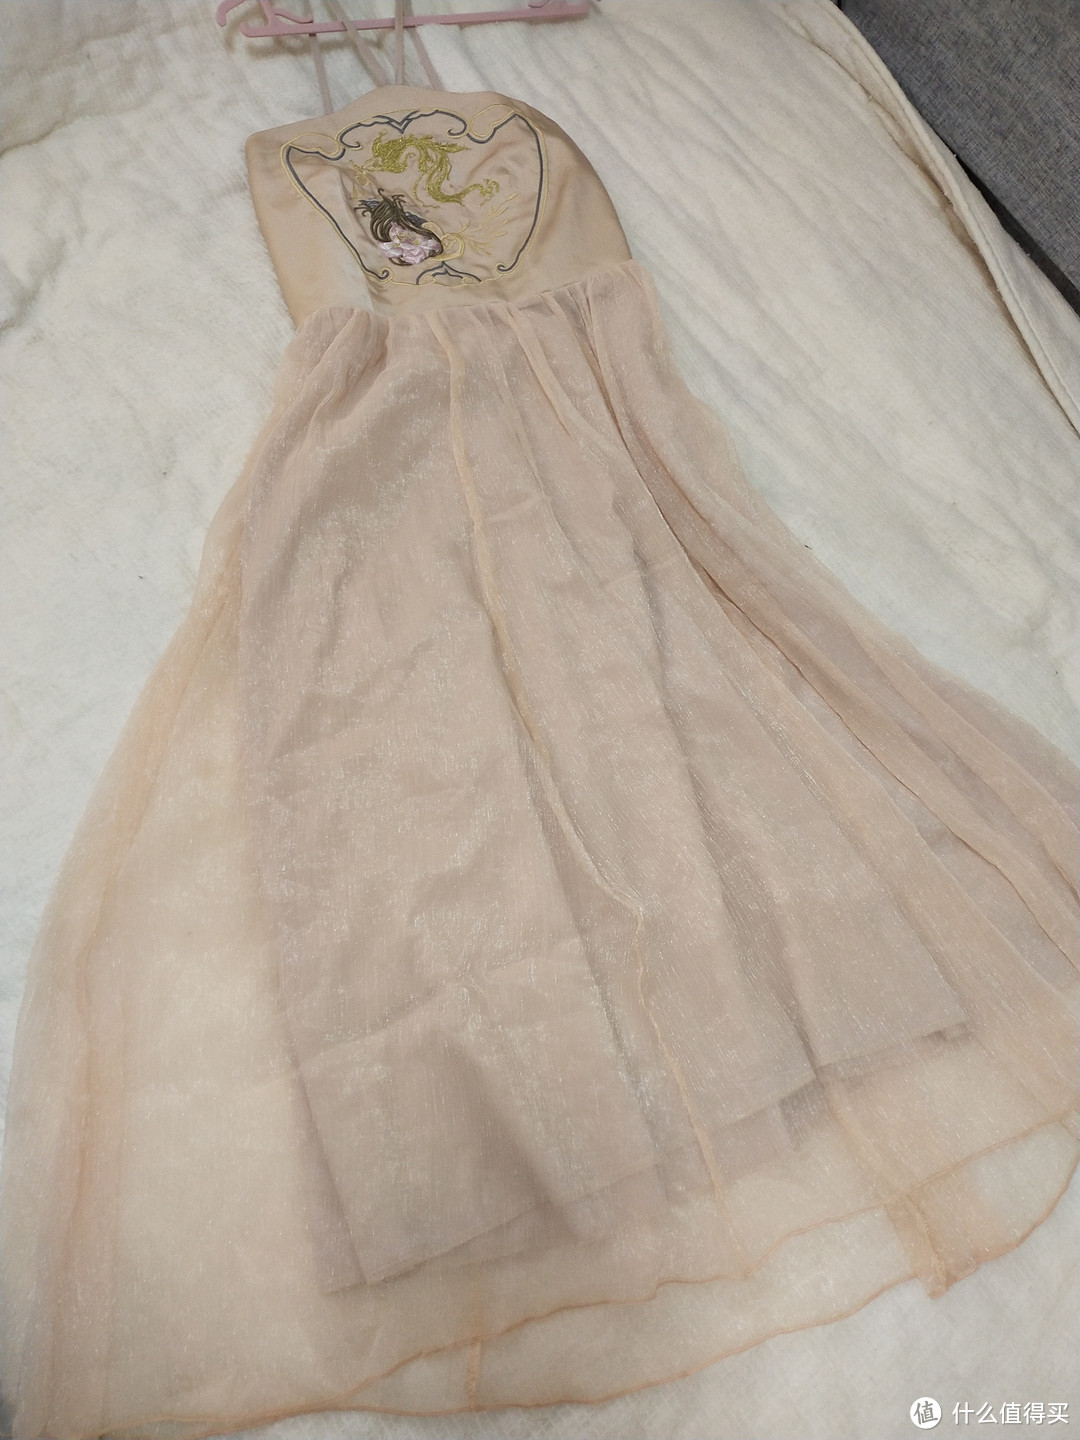 超级漂亮的仙女伴娘刺绣连衣裙：今年姐妹结婚，伴娘服我已经找好了。